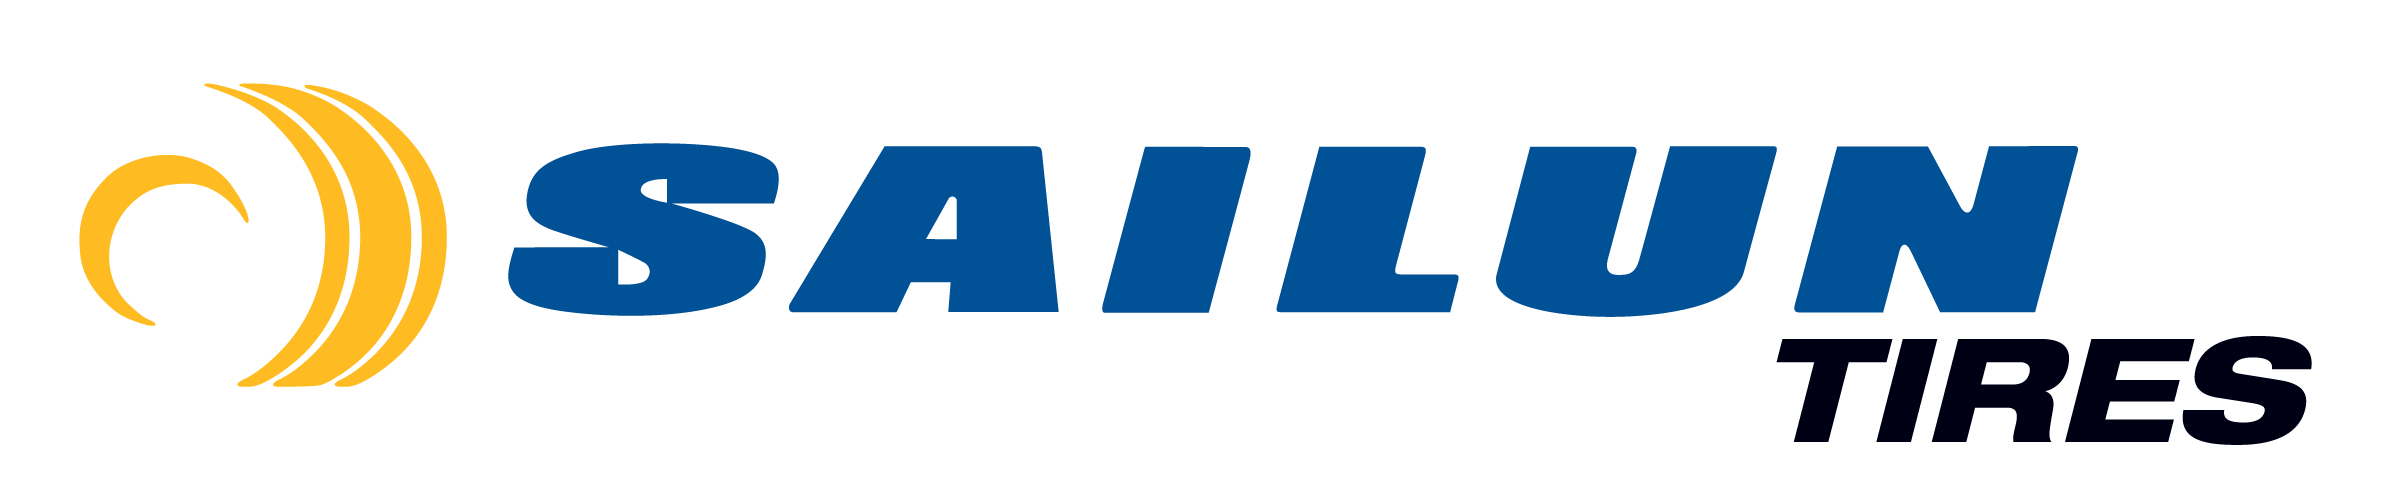 sailun-tires-logo-2